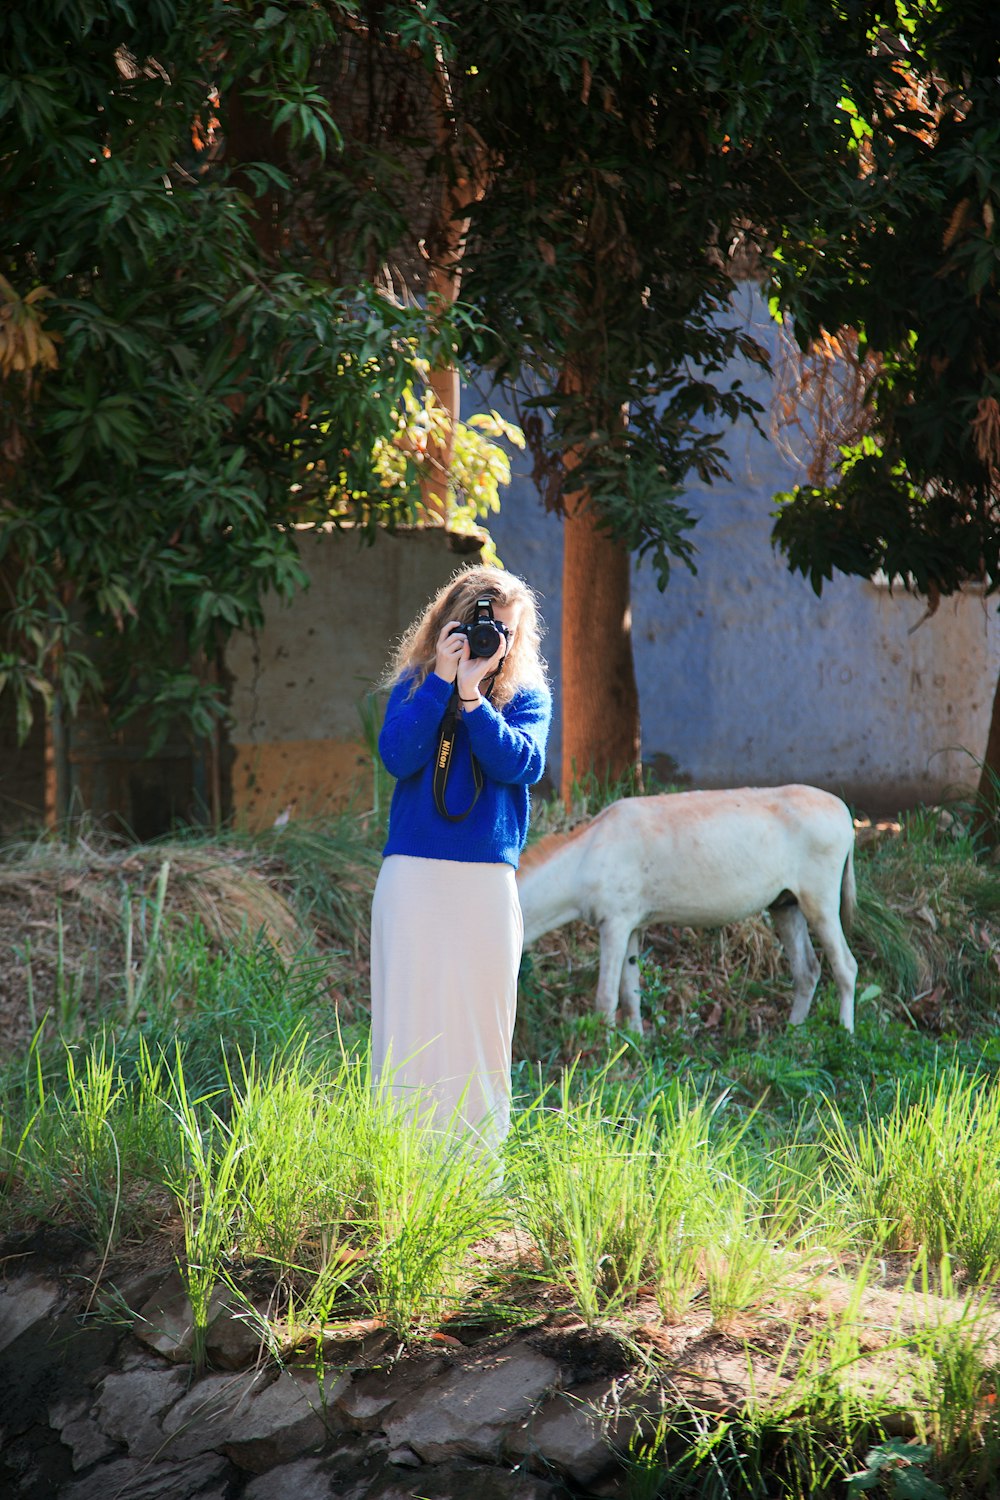 Una mujer está tomando una foto de una vaca